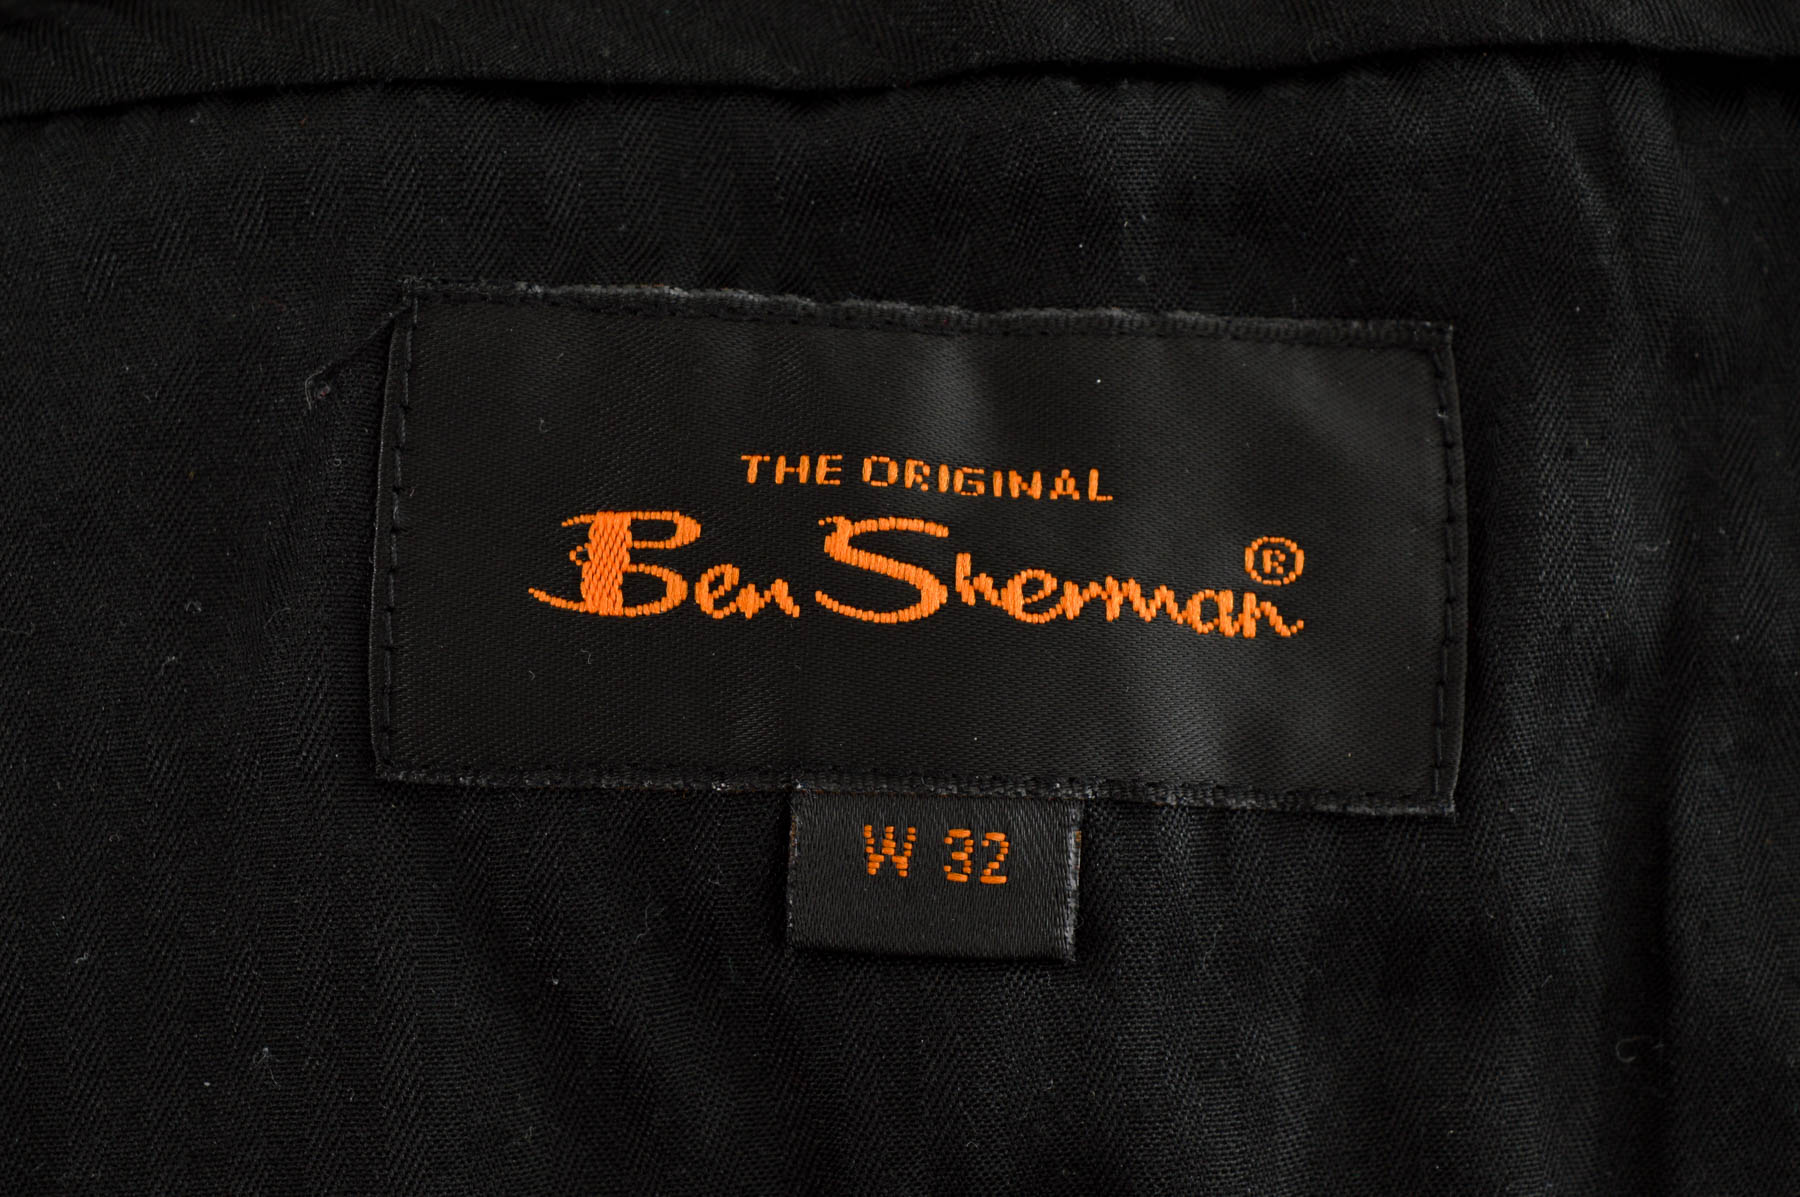 Men's shorts - Ben Sherman - 2